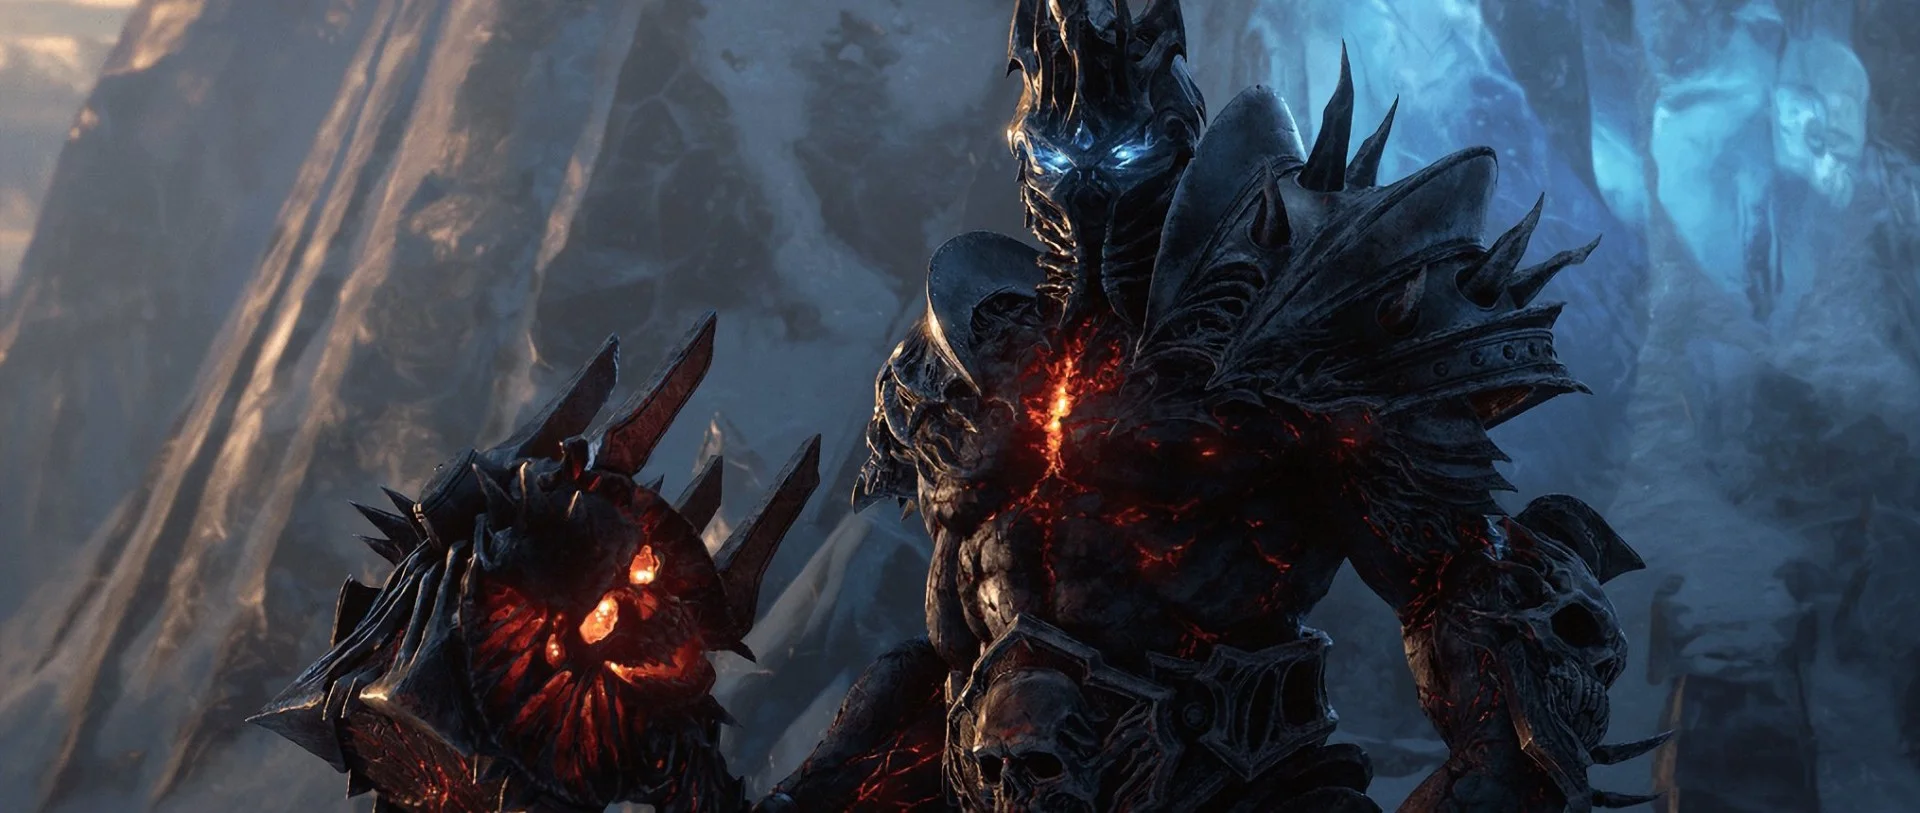 Слух: первые изображения Overwatch 2, Diablo 4 и World of Warcraft: Shadowlands - фото 2